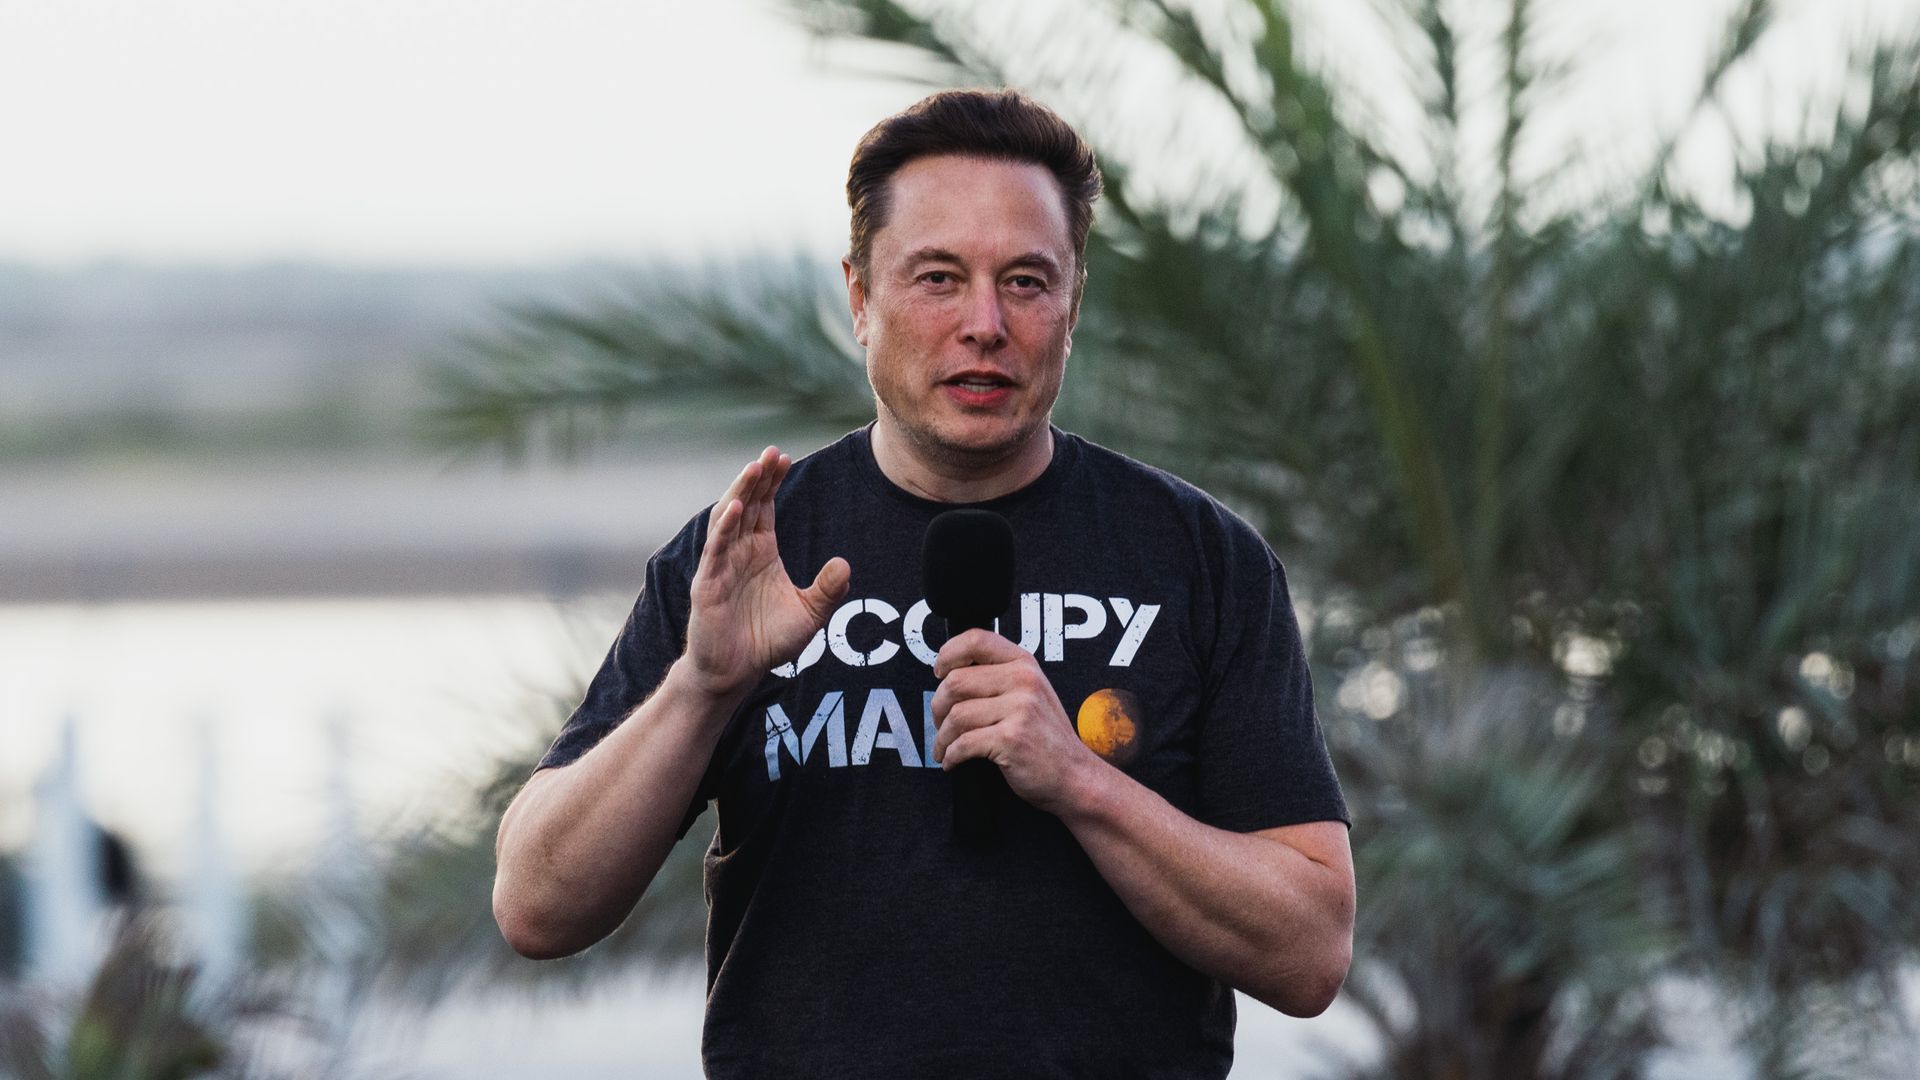 Neuralink co-founder Elon Musk during an August event in Boca Chica, Texas.